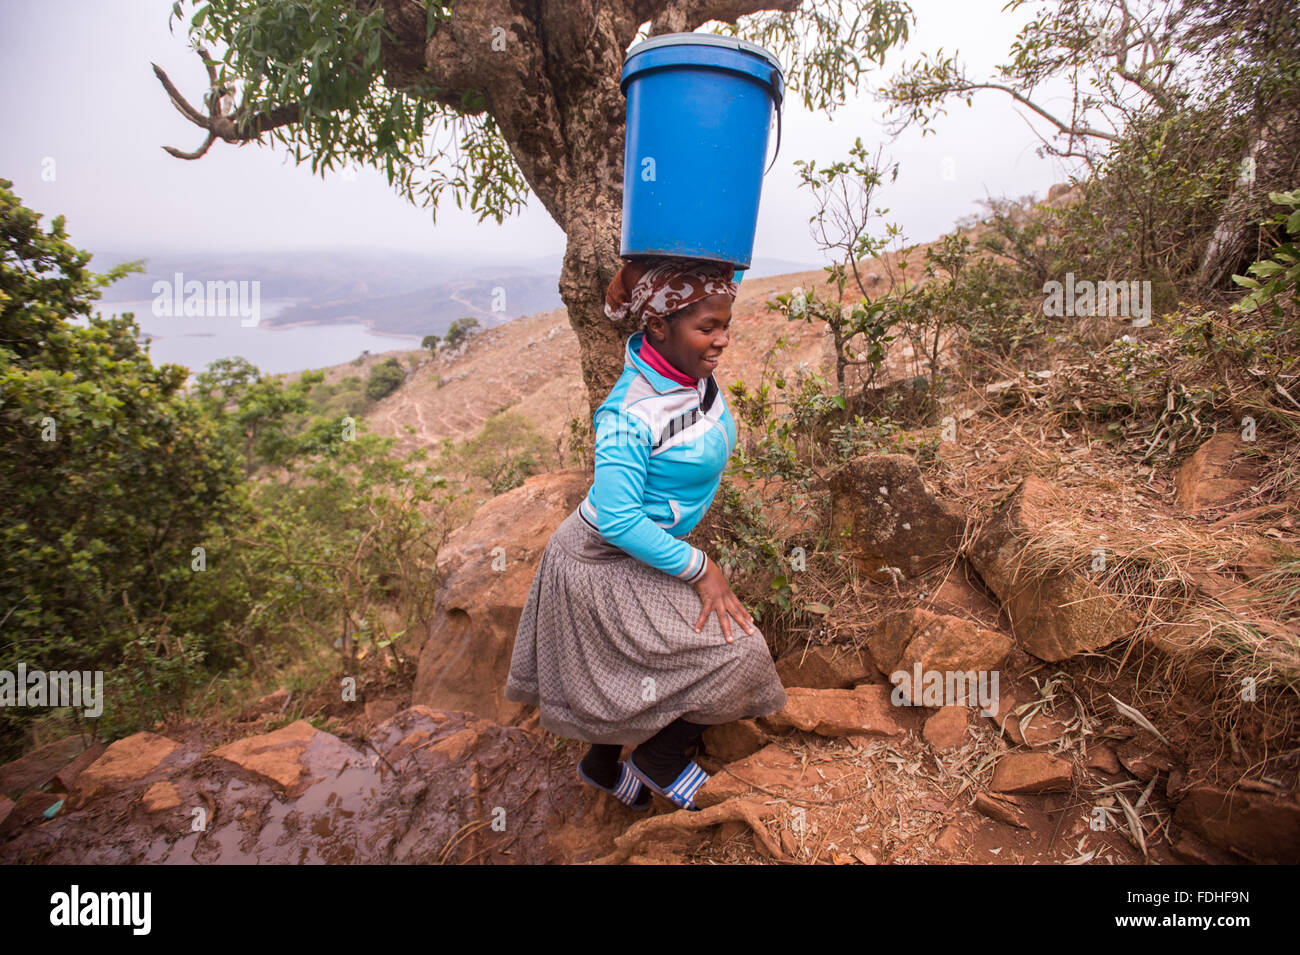 Frau mit einem Eimer auf dem Kopf über felsiges Terrain in der Hhohho Region von Swasiland, Afrika. Stockfoto